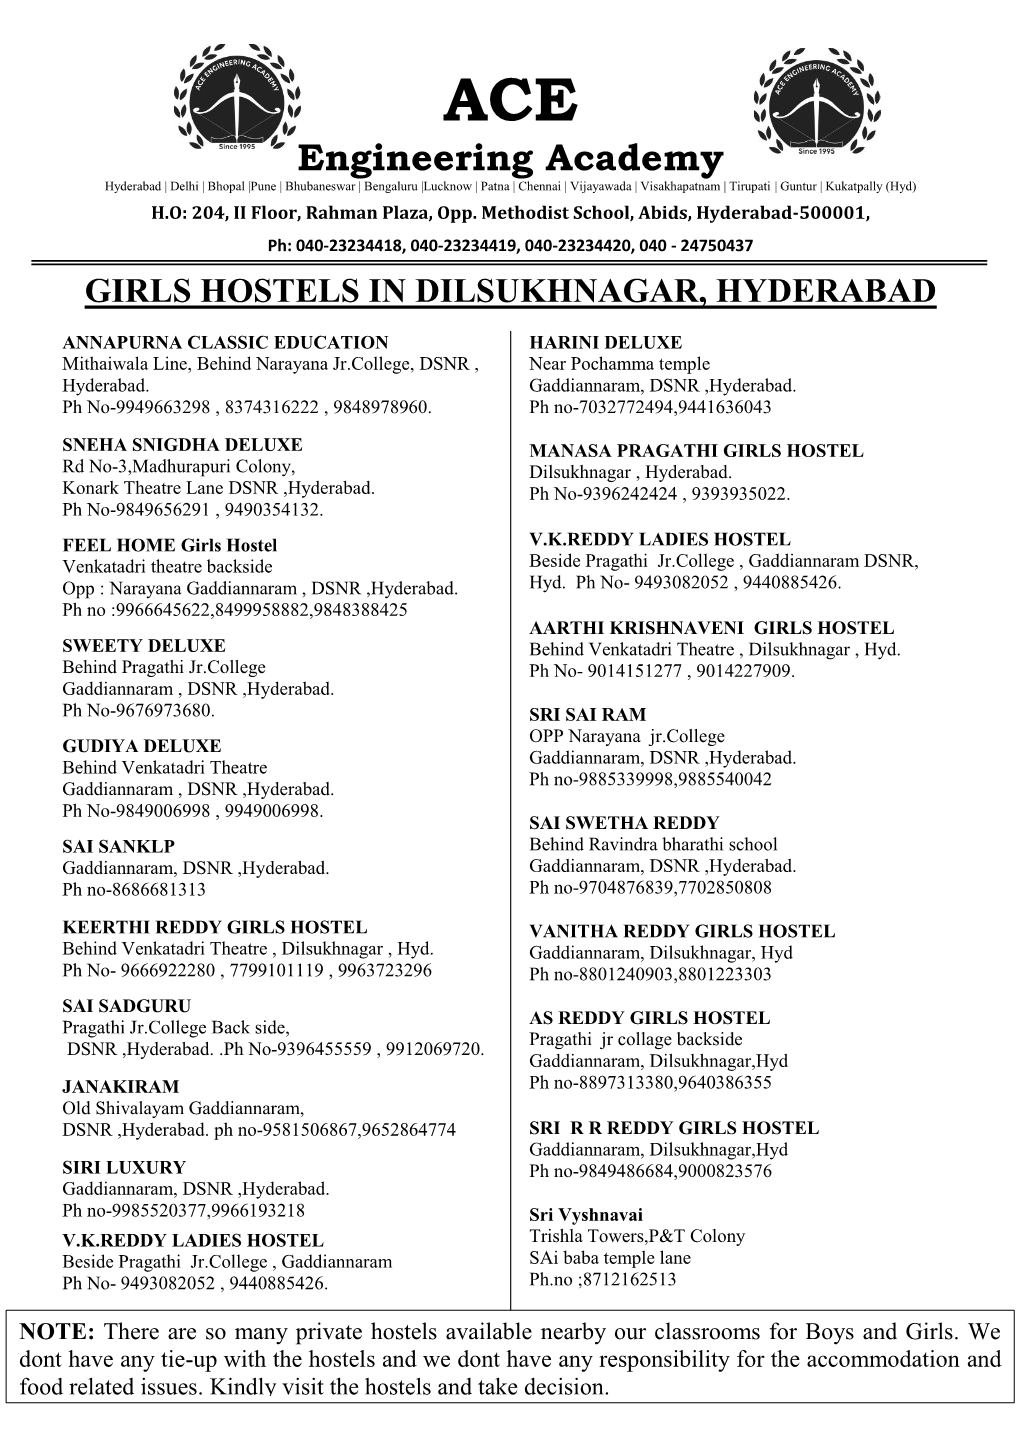 Girls Hostels in Dilsukhnagar, Hyderabad